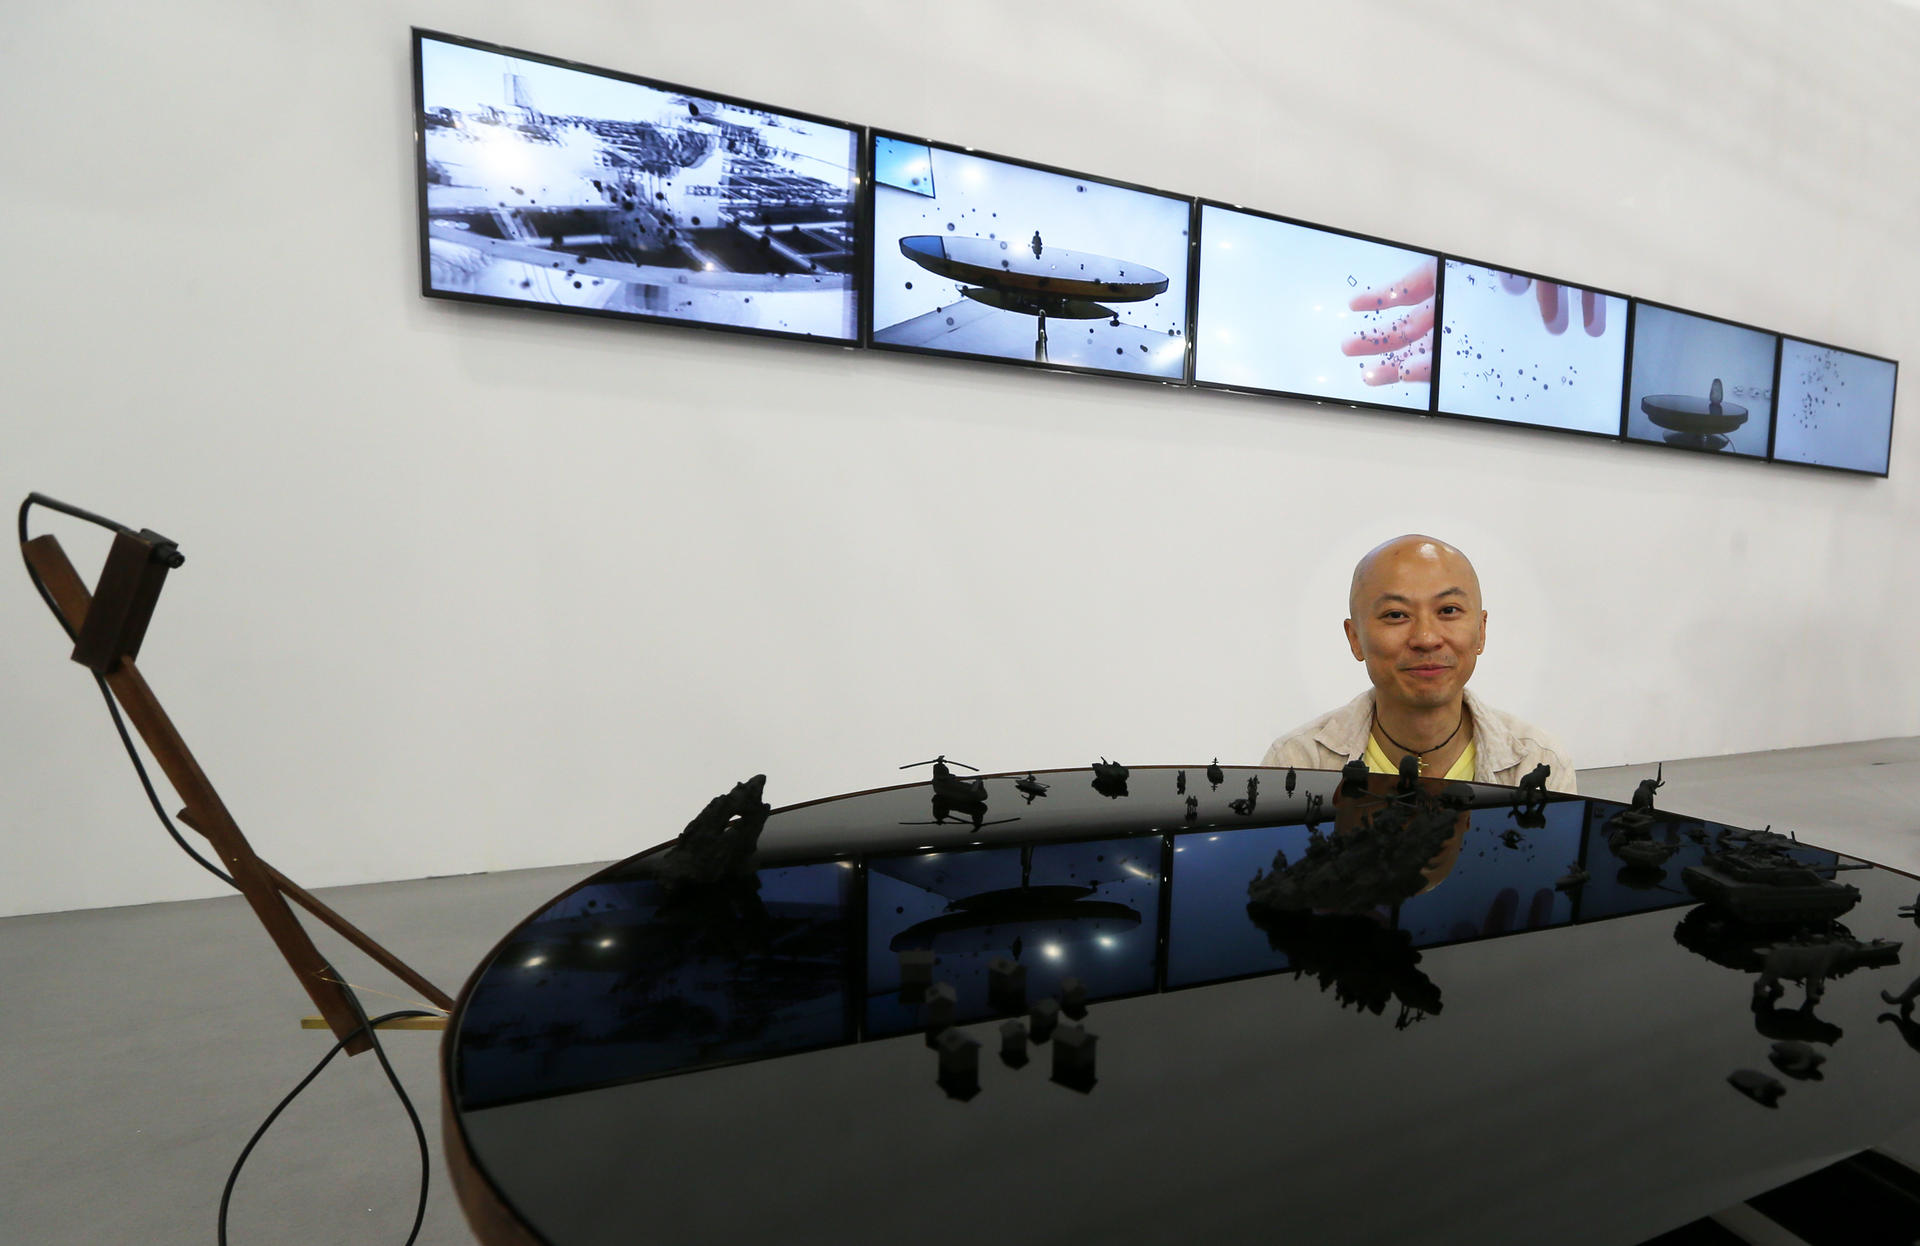 Hung Keung with his installation at Art Basel - Hong Kong.Photo: Sam Tsang